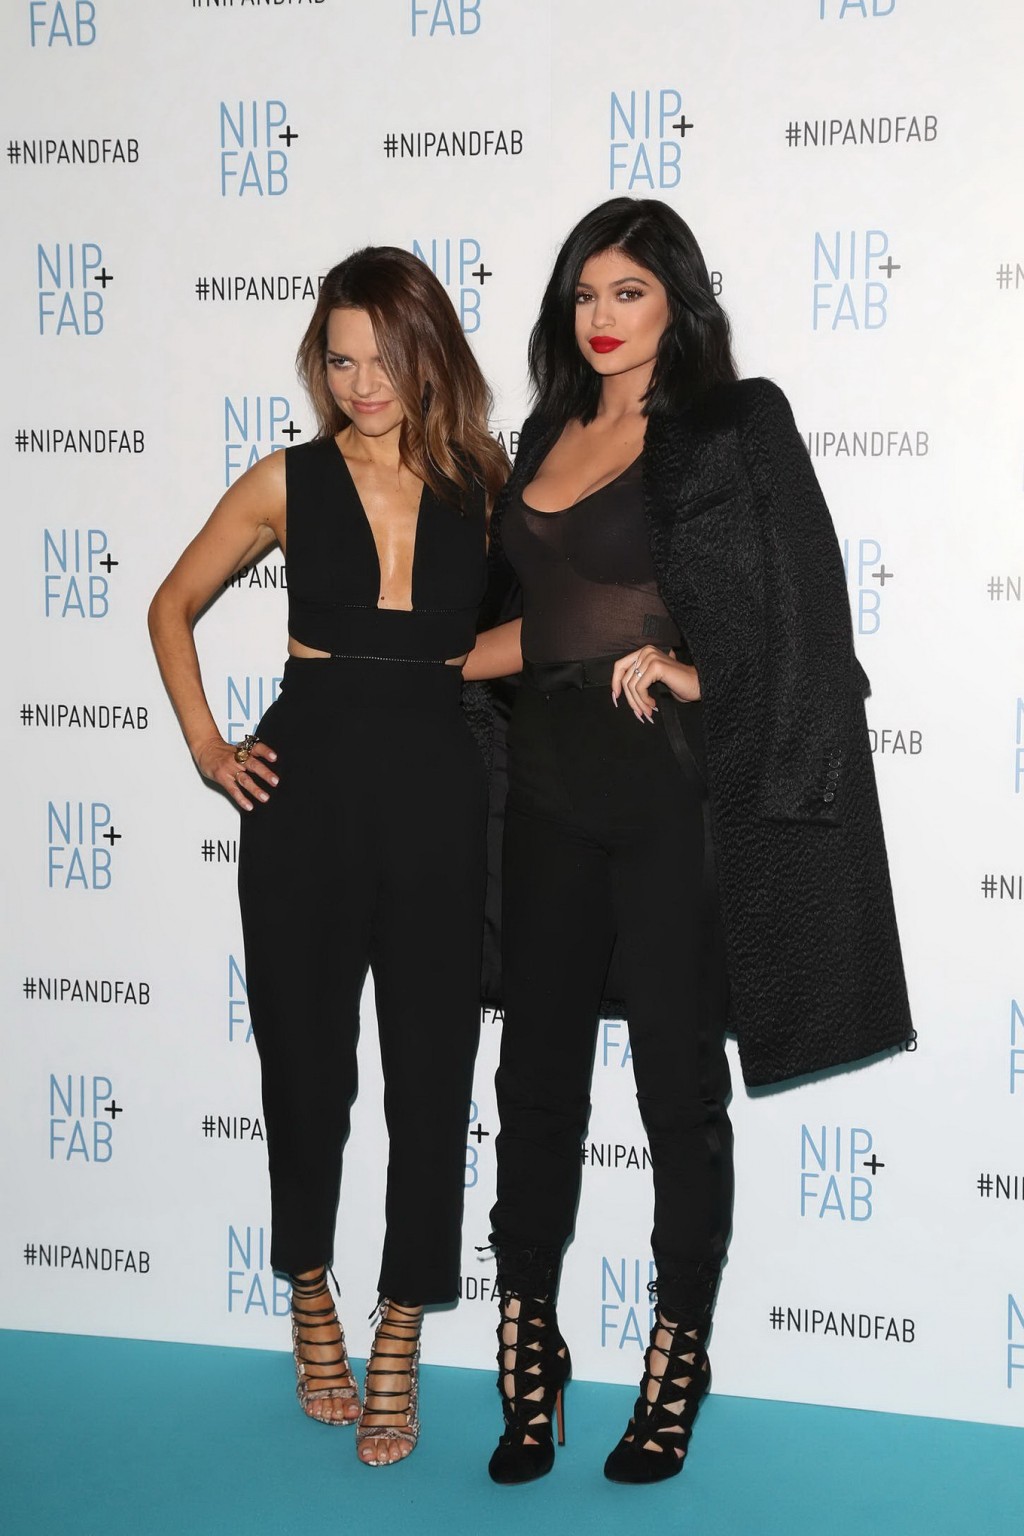 Kylie Jenner vollbusig und mit durchsichtigem BH beim Nip-Fab-Fotocall in London
 #75170144